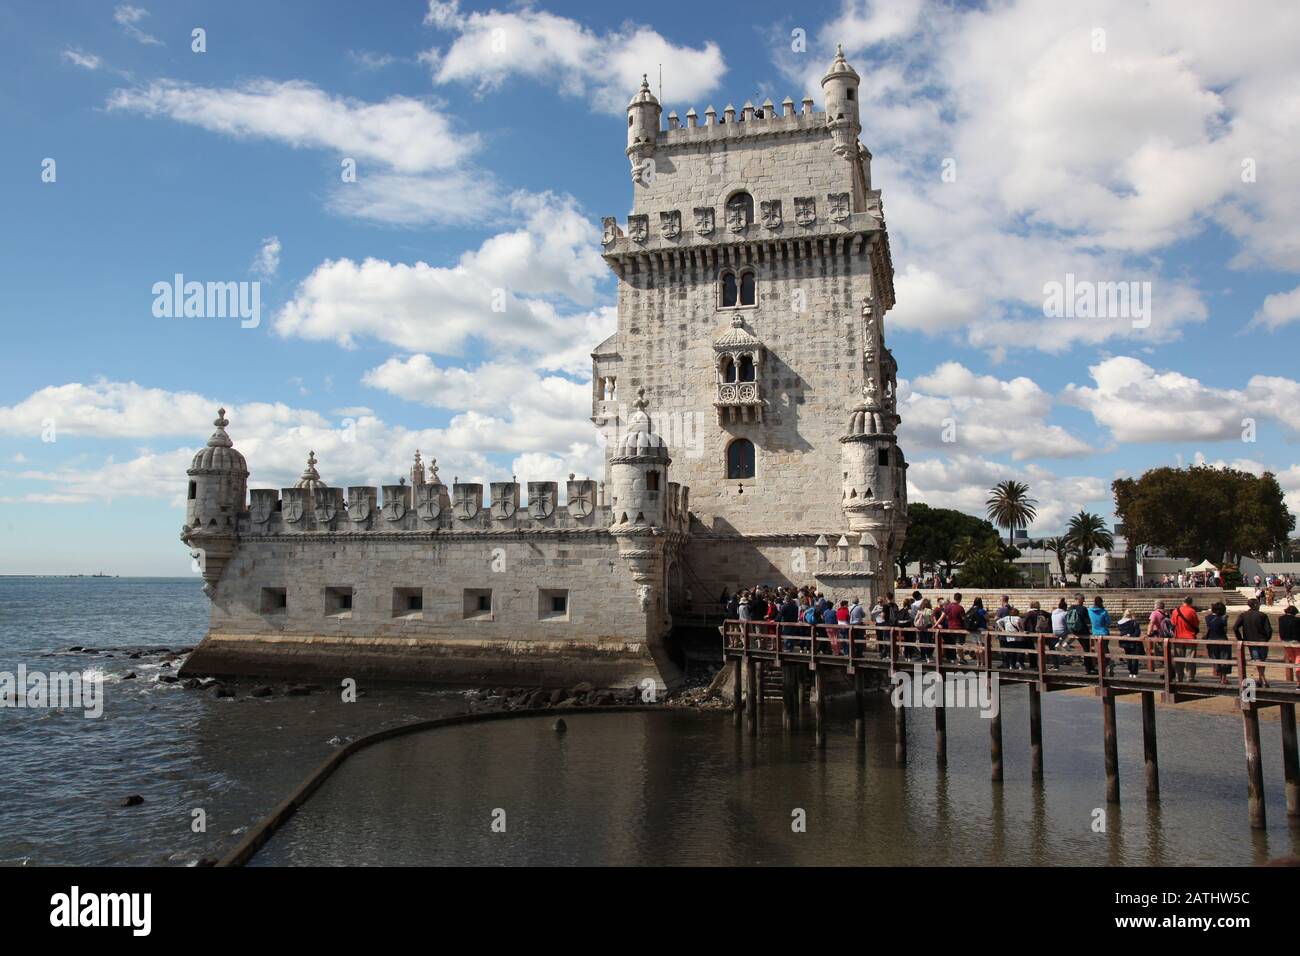 Der majestätische Festungsturm Torre de Belém, das feierliche Tor zu Lissabon, eines der sieben Wunder Portugals Stockfoto